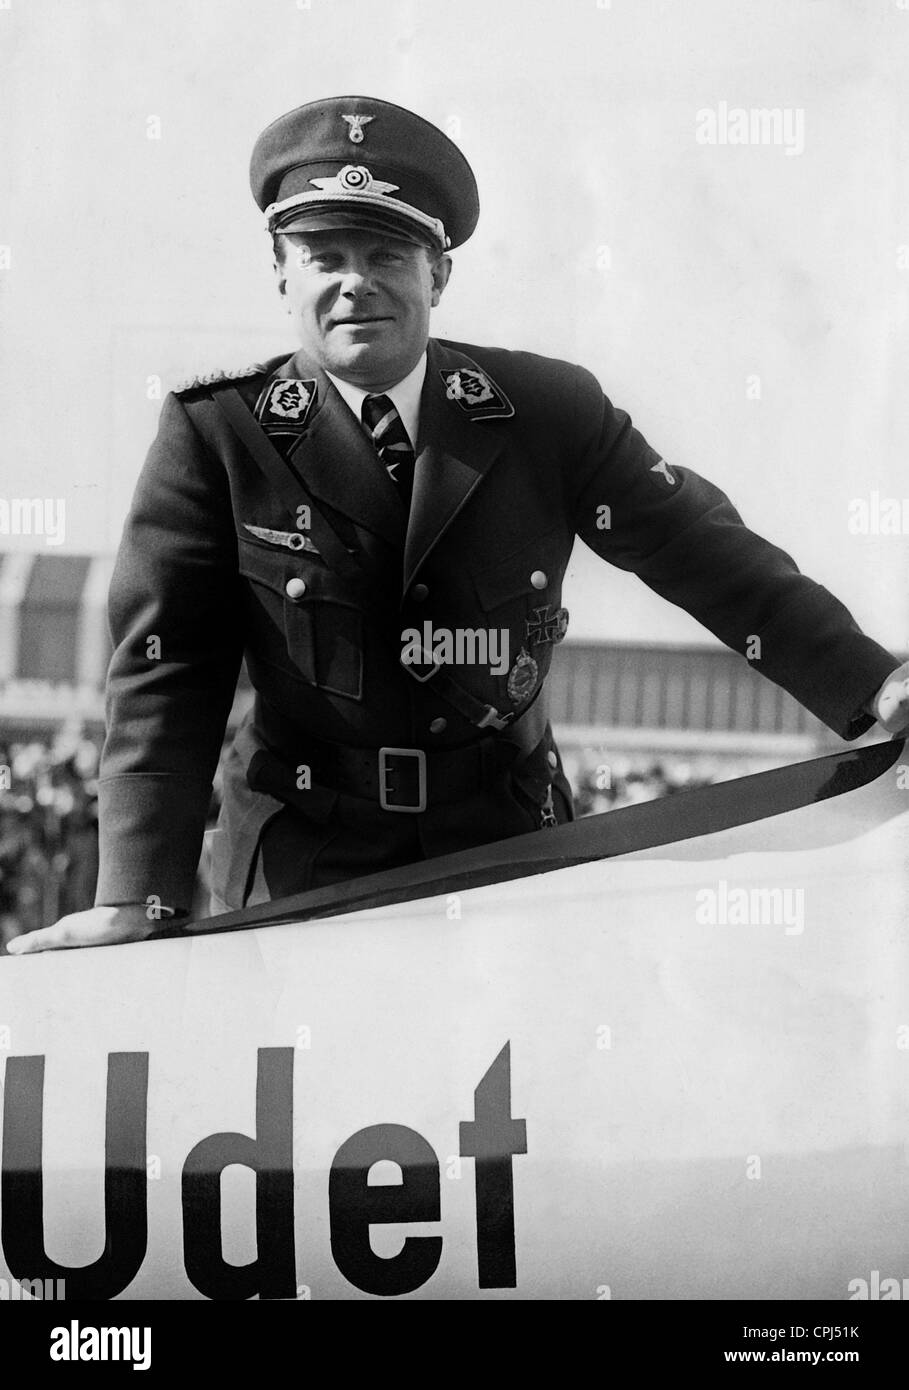 Ernst Udet with his glider, 1936 Stock Photo